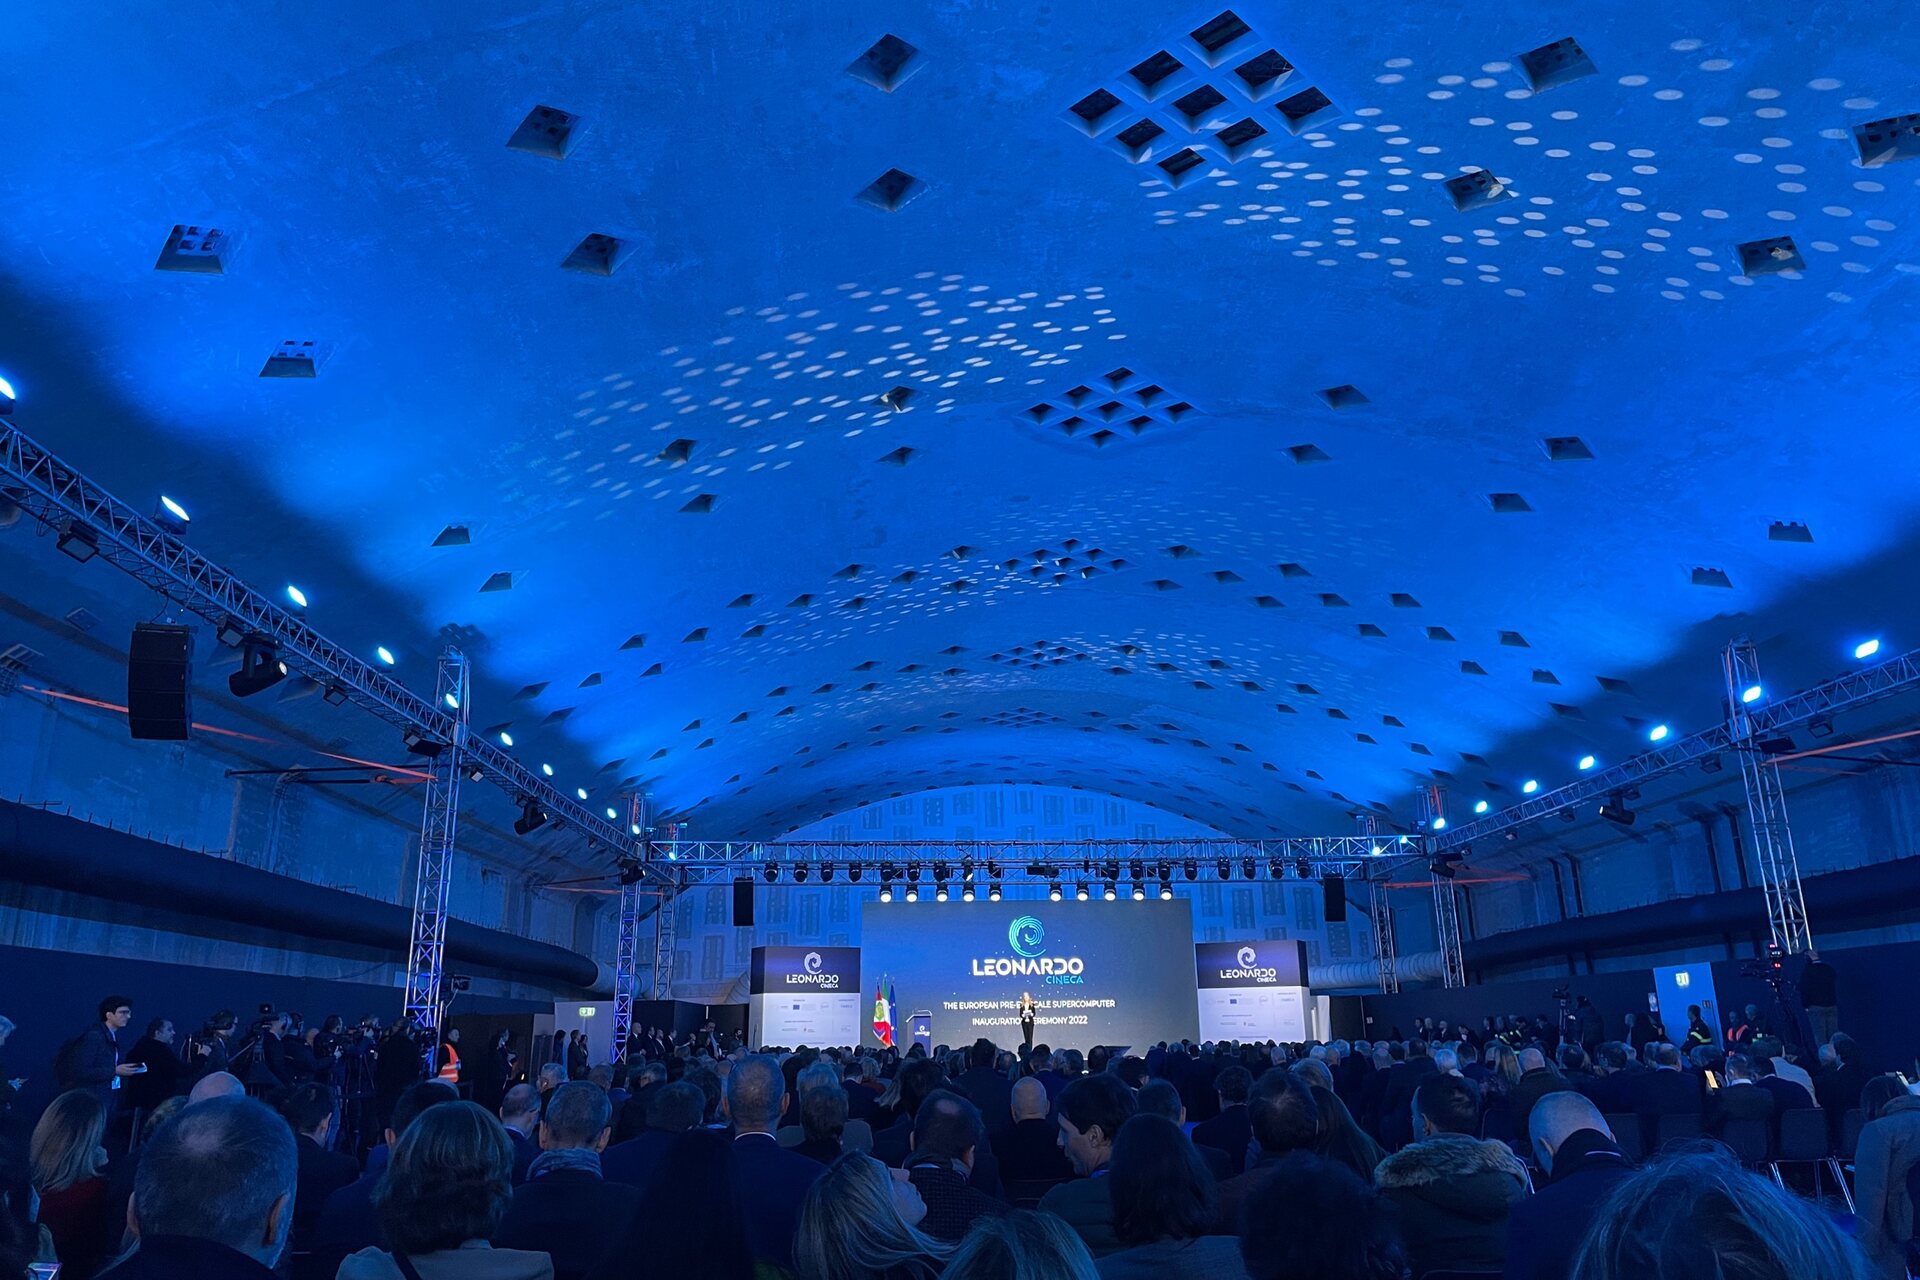 Церемонијата на инаугурација на суперкомпјутерот Леонардо во Болоња на 24 ноември 2022 година